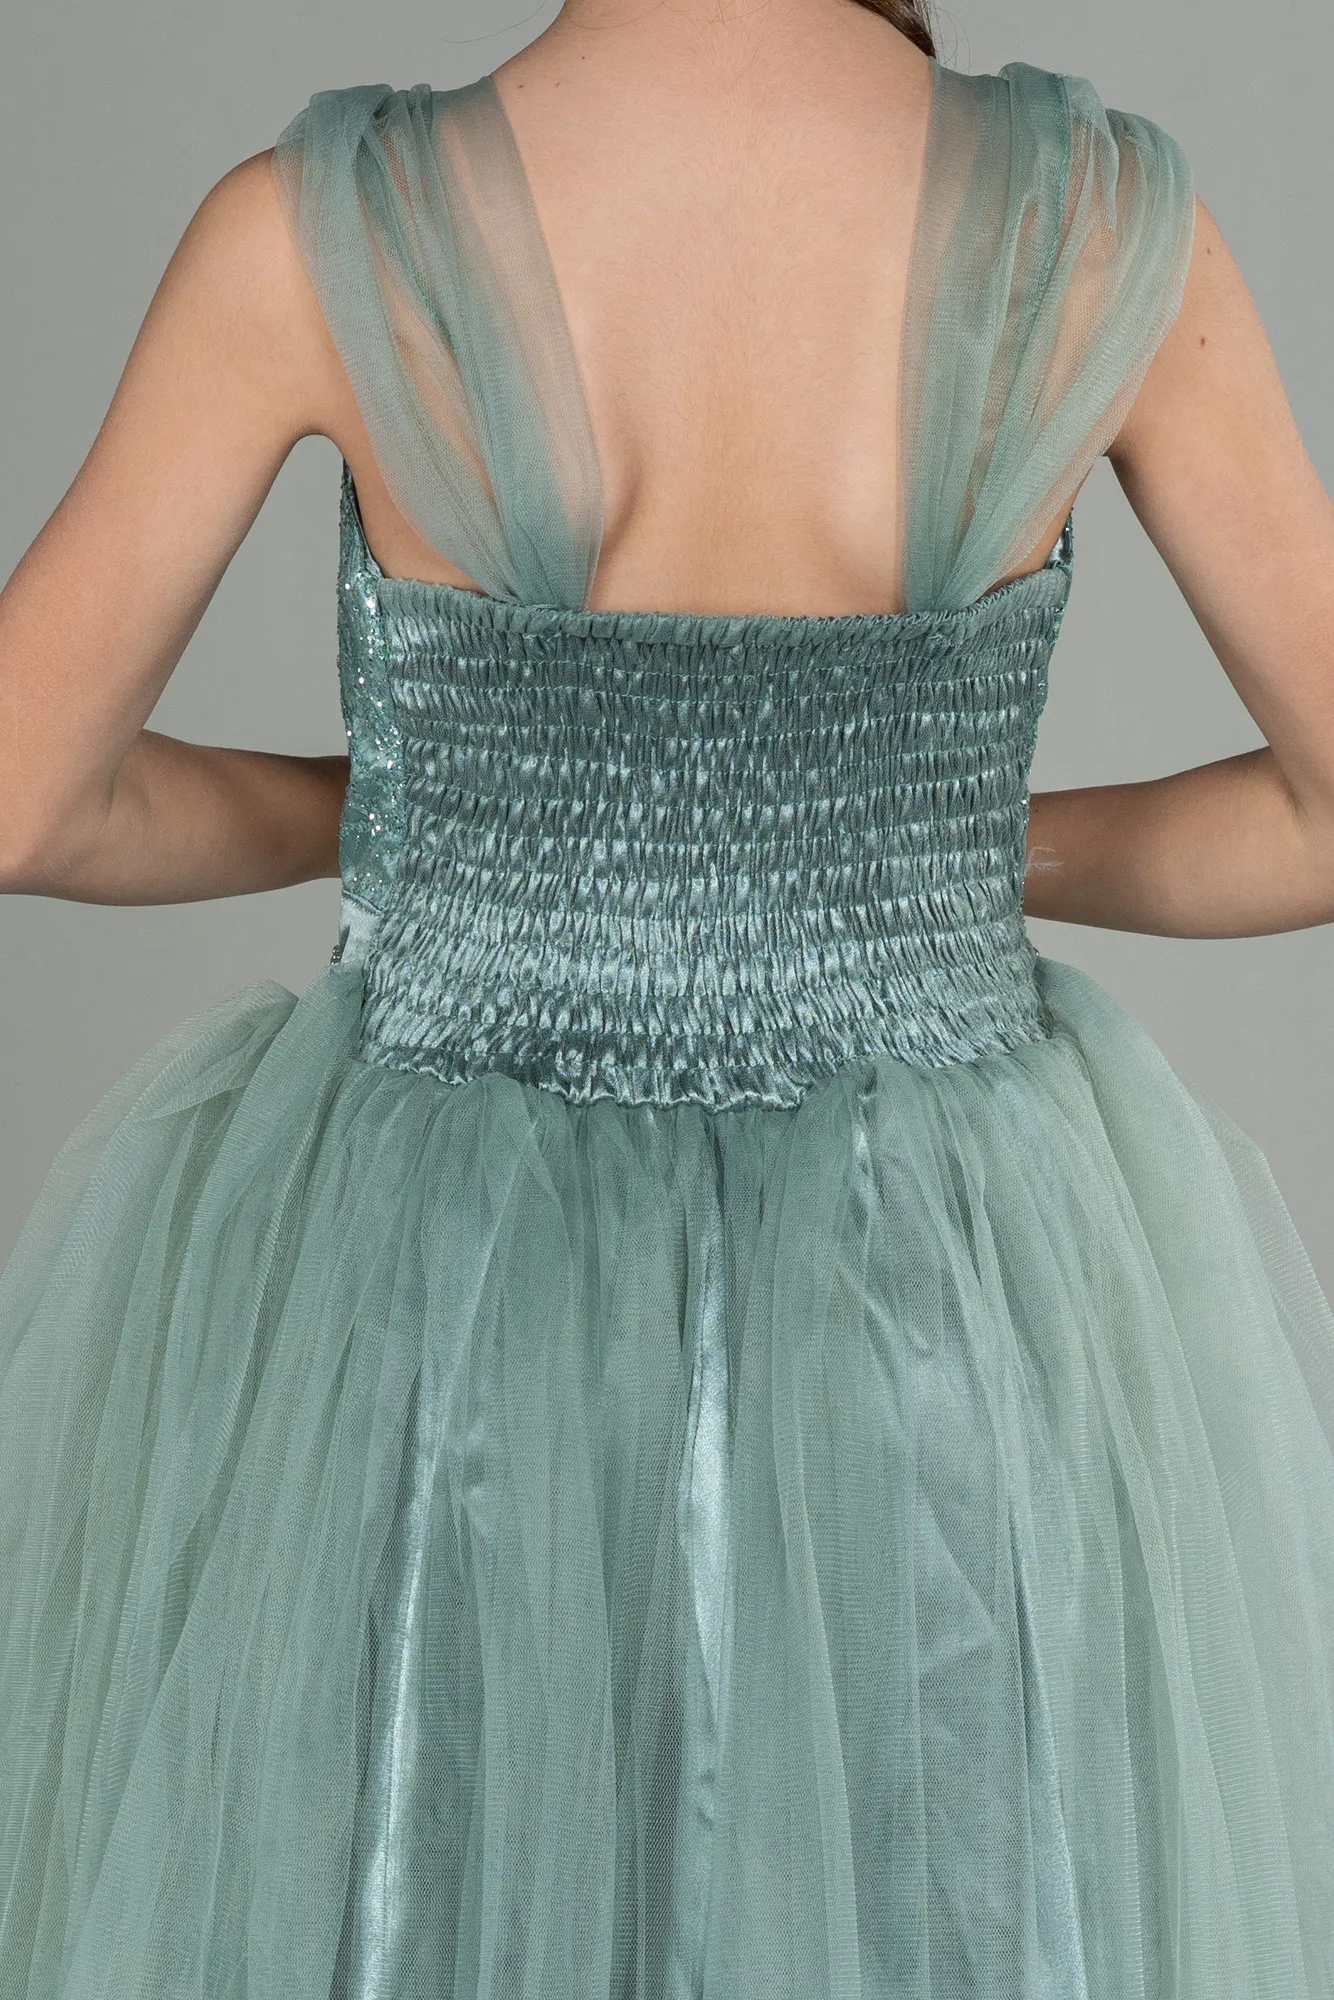 Turquoise-Short Girl Dress ABK1710